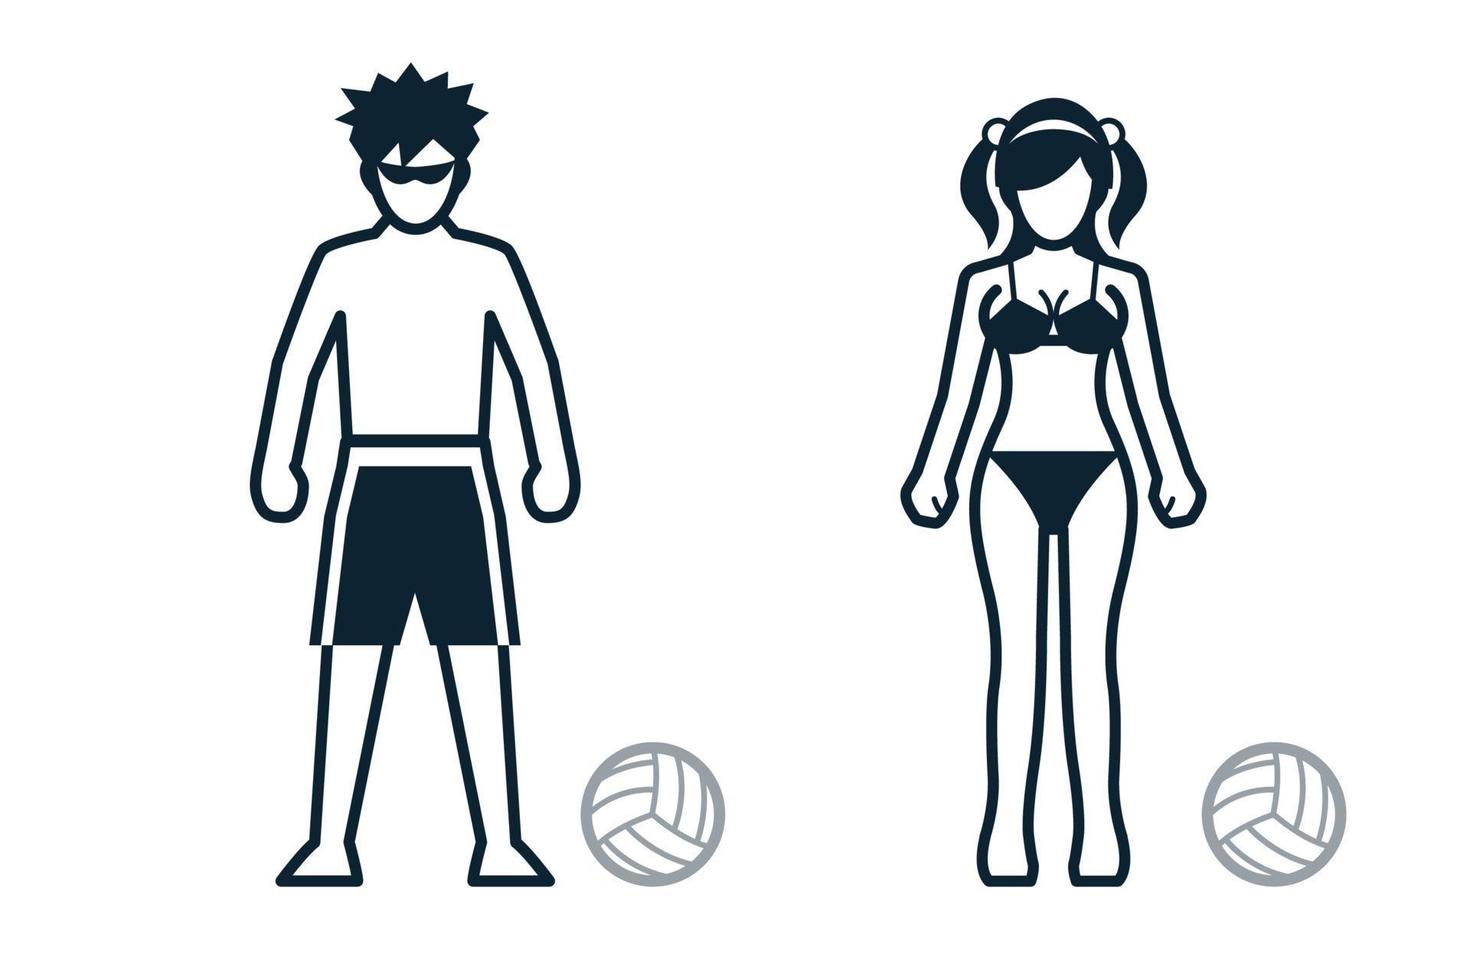 vôlei de praia, jogador de esporte, pessoas e ícones de roupas com fundo branco vetor